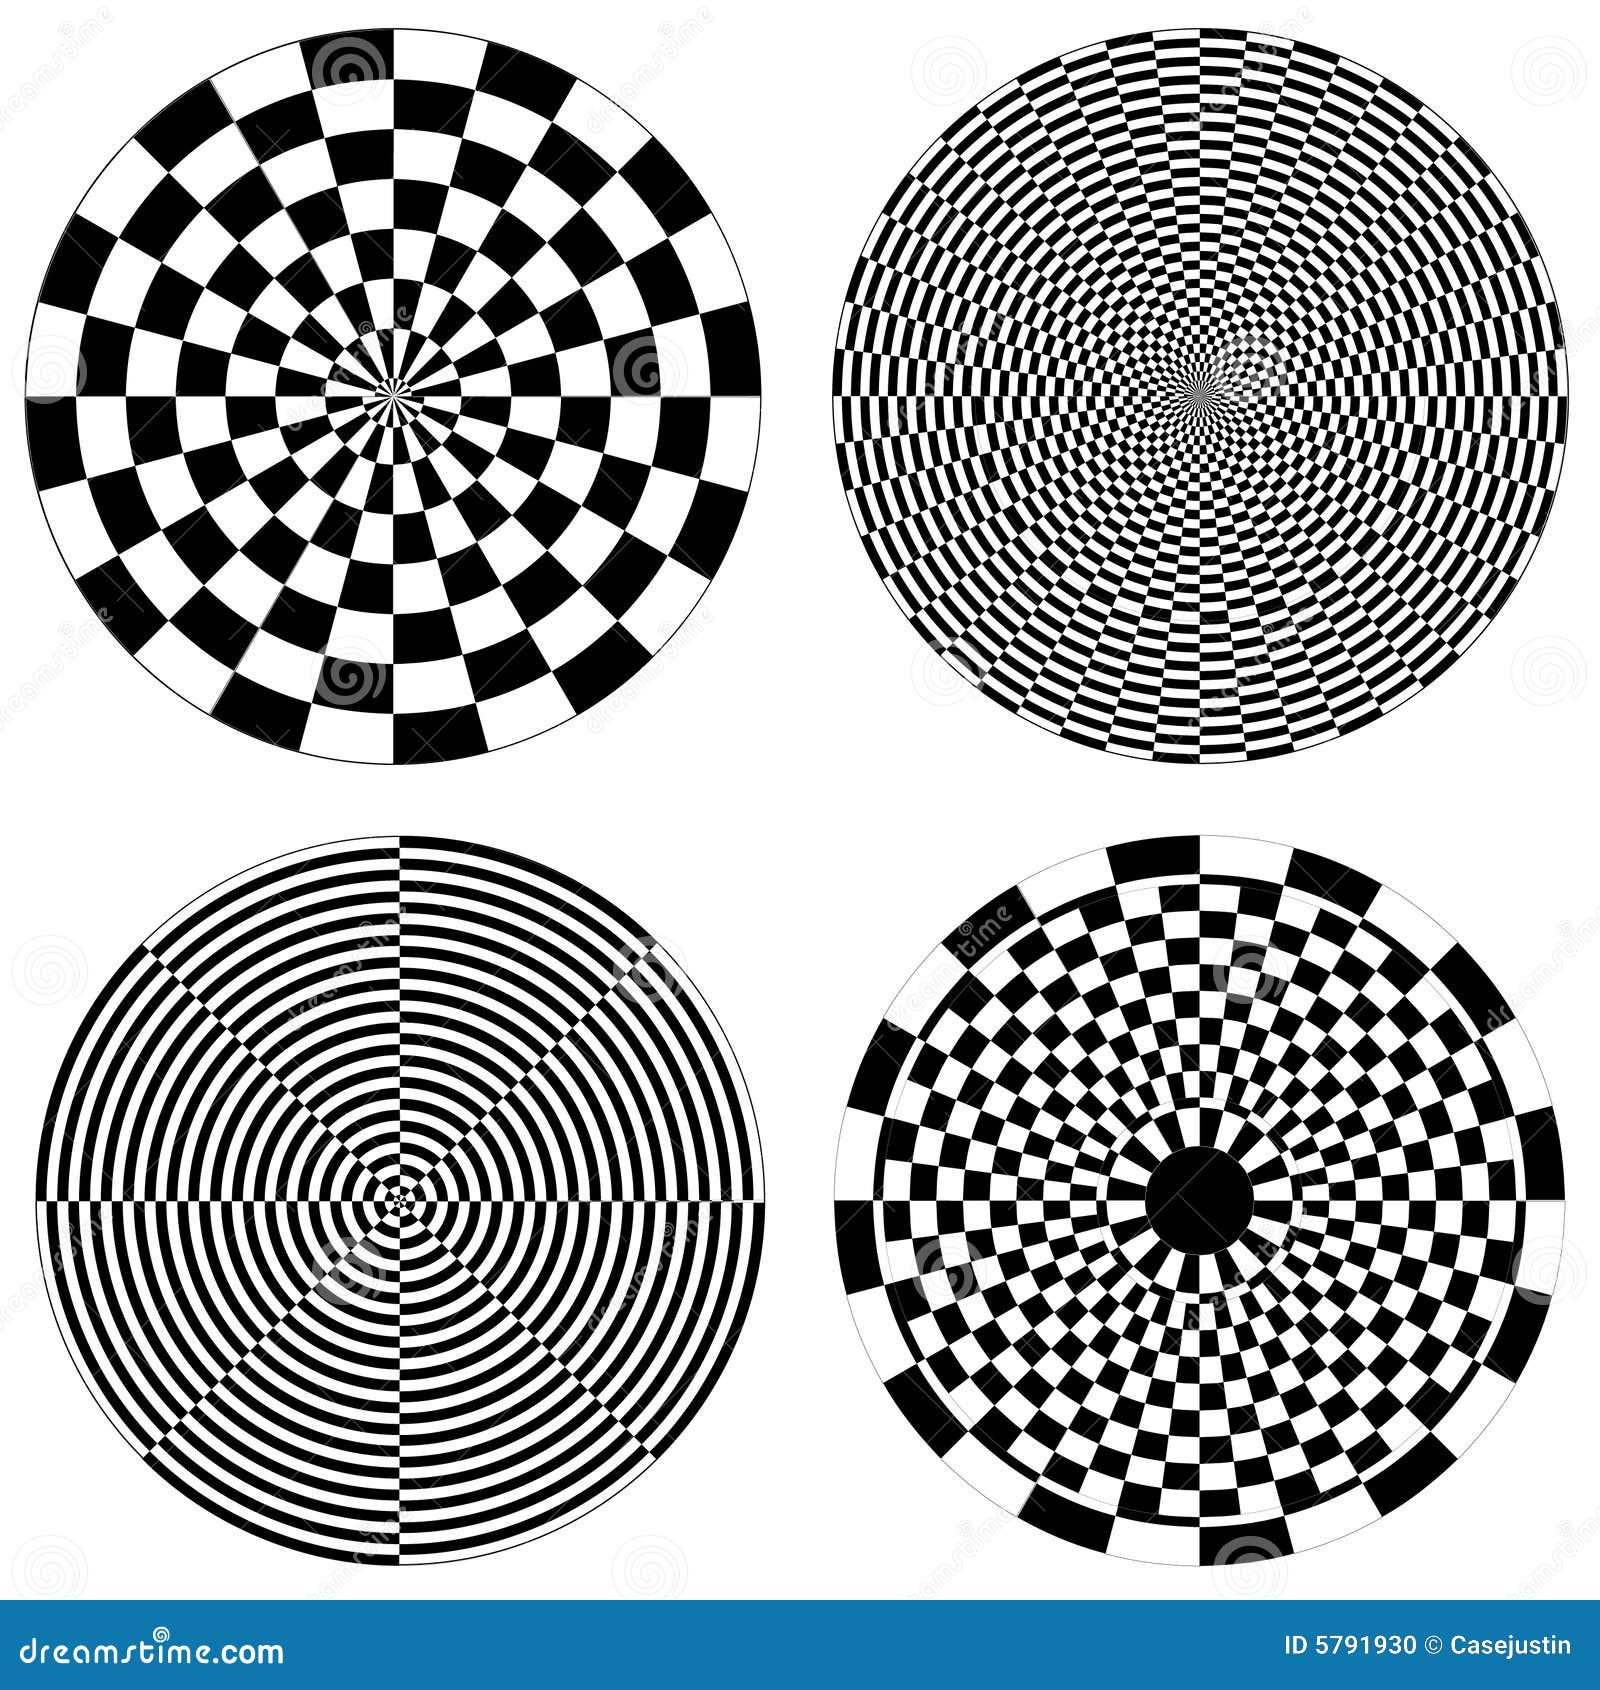 dartboard & checkerboard spirals